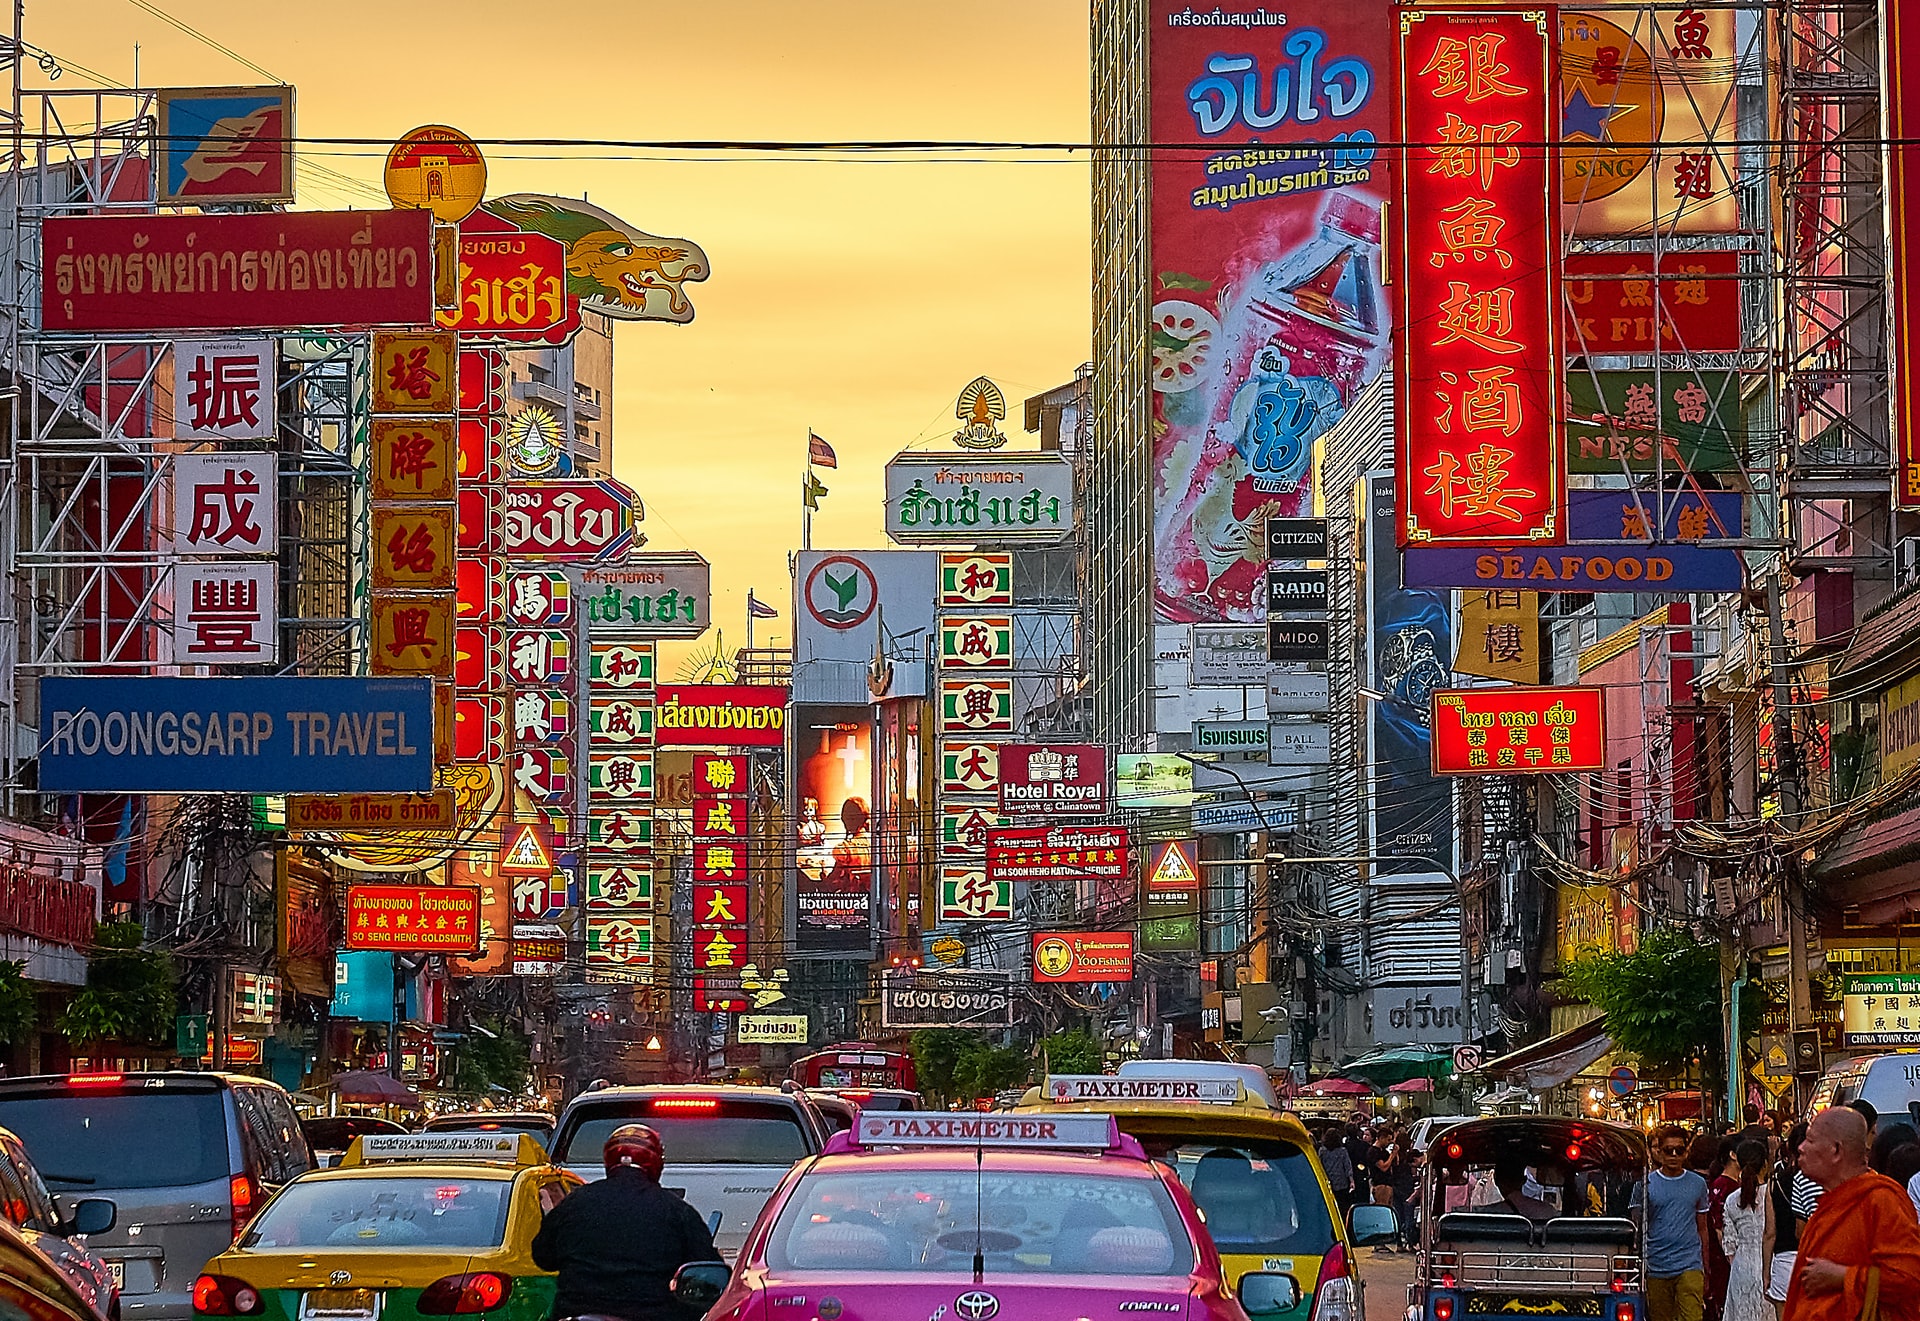 Chinatown, Thailand. Photo by Geoff Greenwood on Unsplash